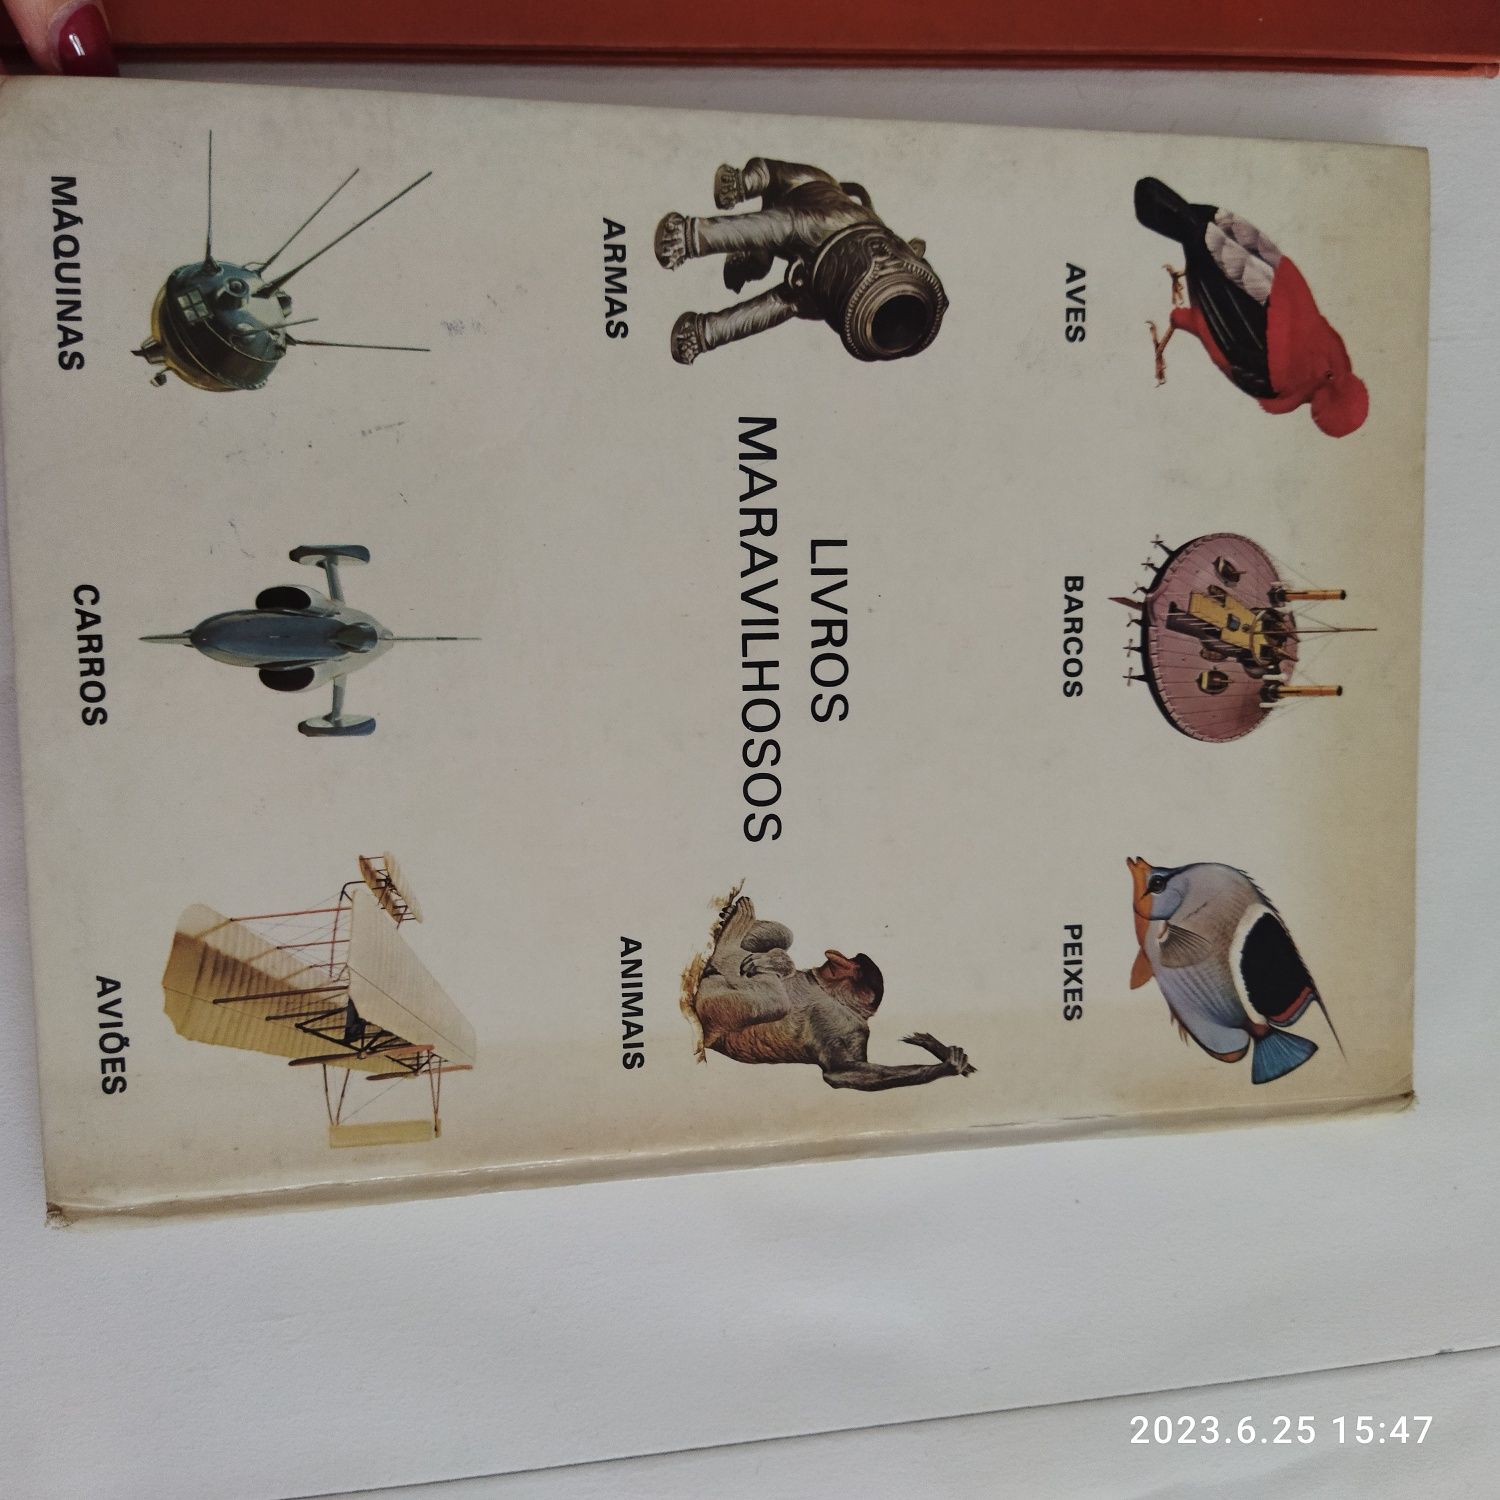 Os insetos/livros maravilhosos animais